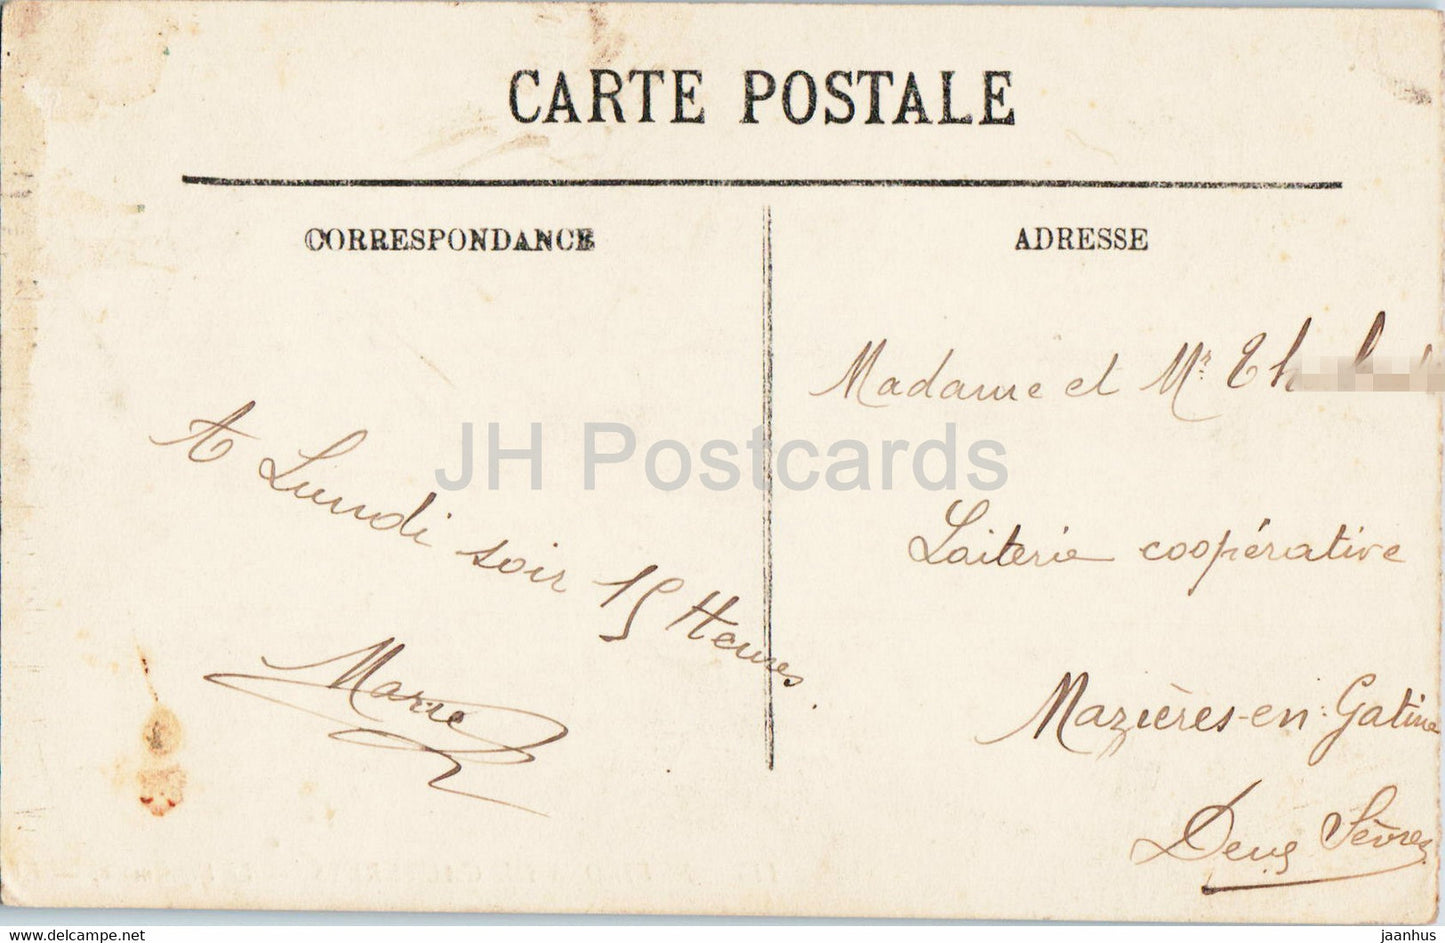 Environs de Cauterets - Le Vignemale - 115 - alte Postkarte - 1912 - Frankreich - gebraucht